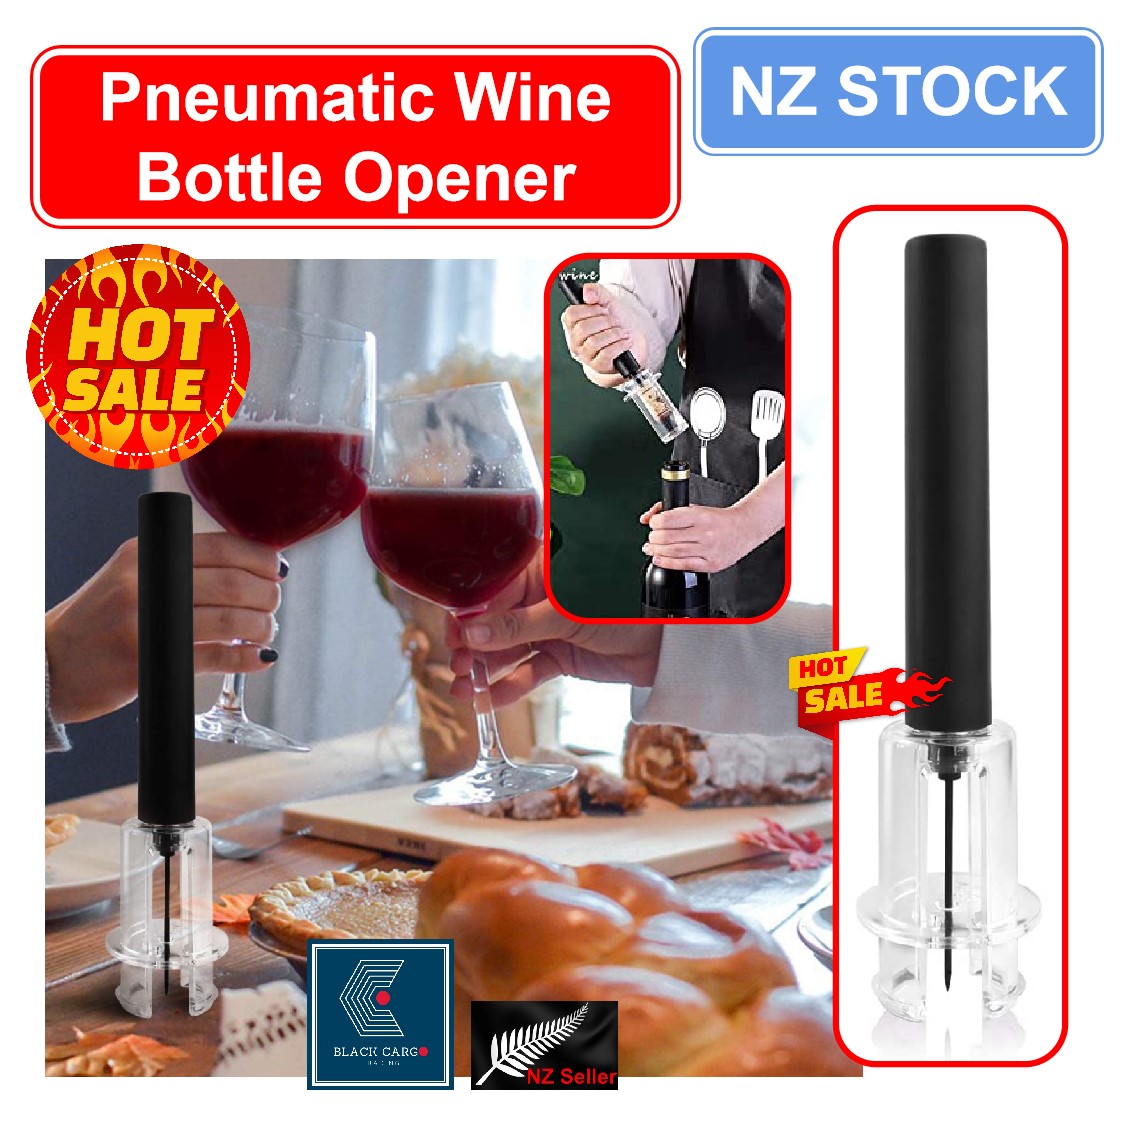 Air Pressure Wine Bottle Opener - Referdeal